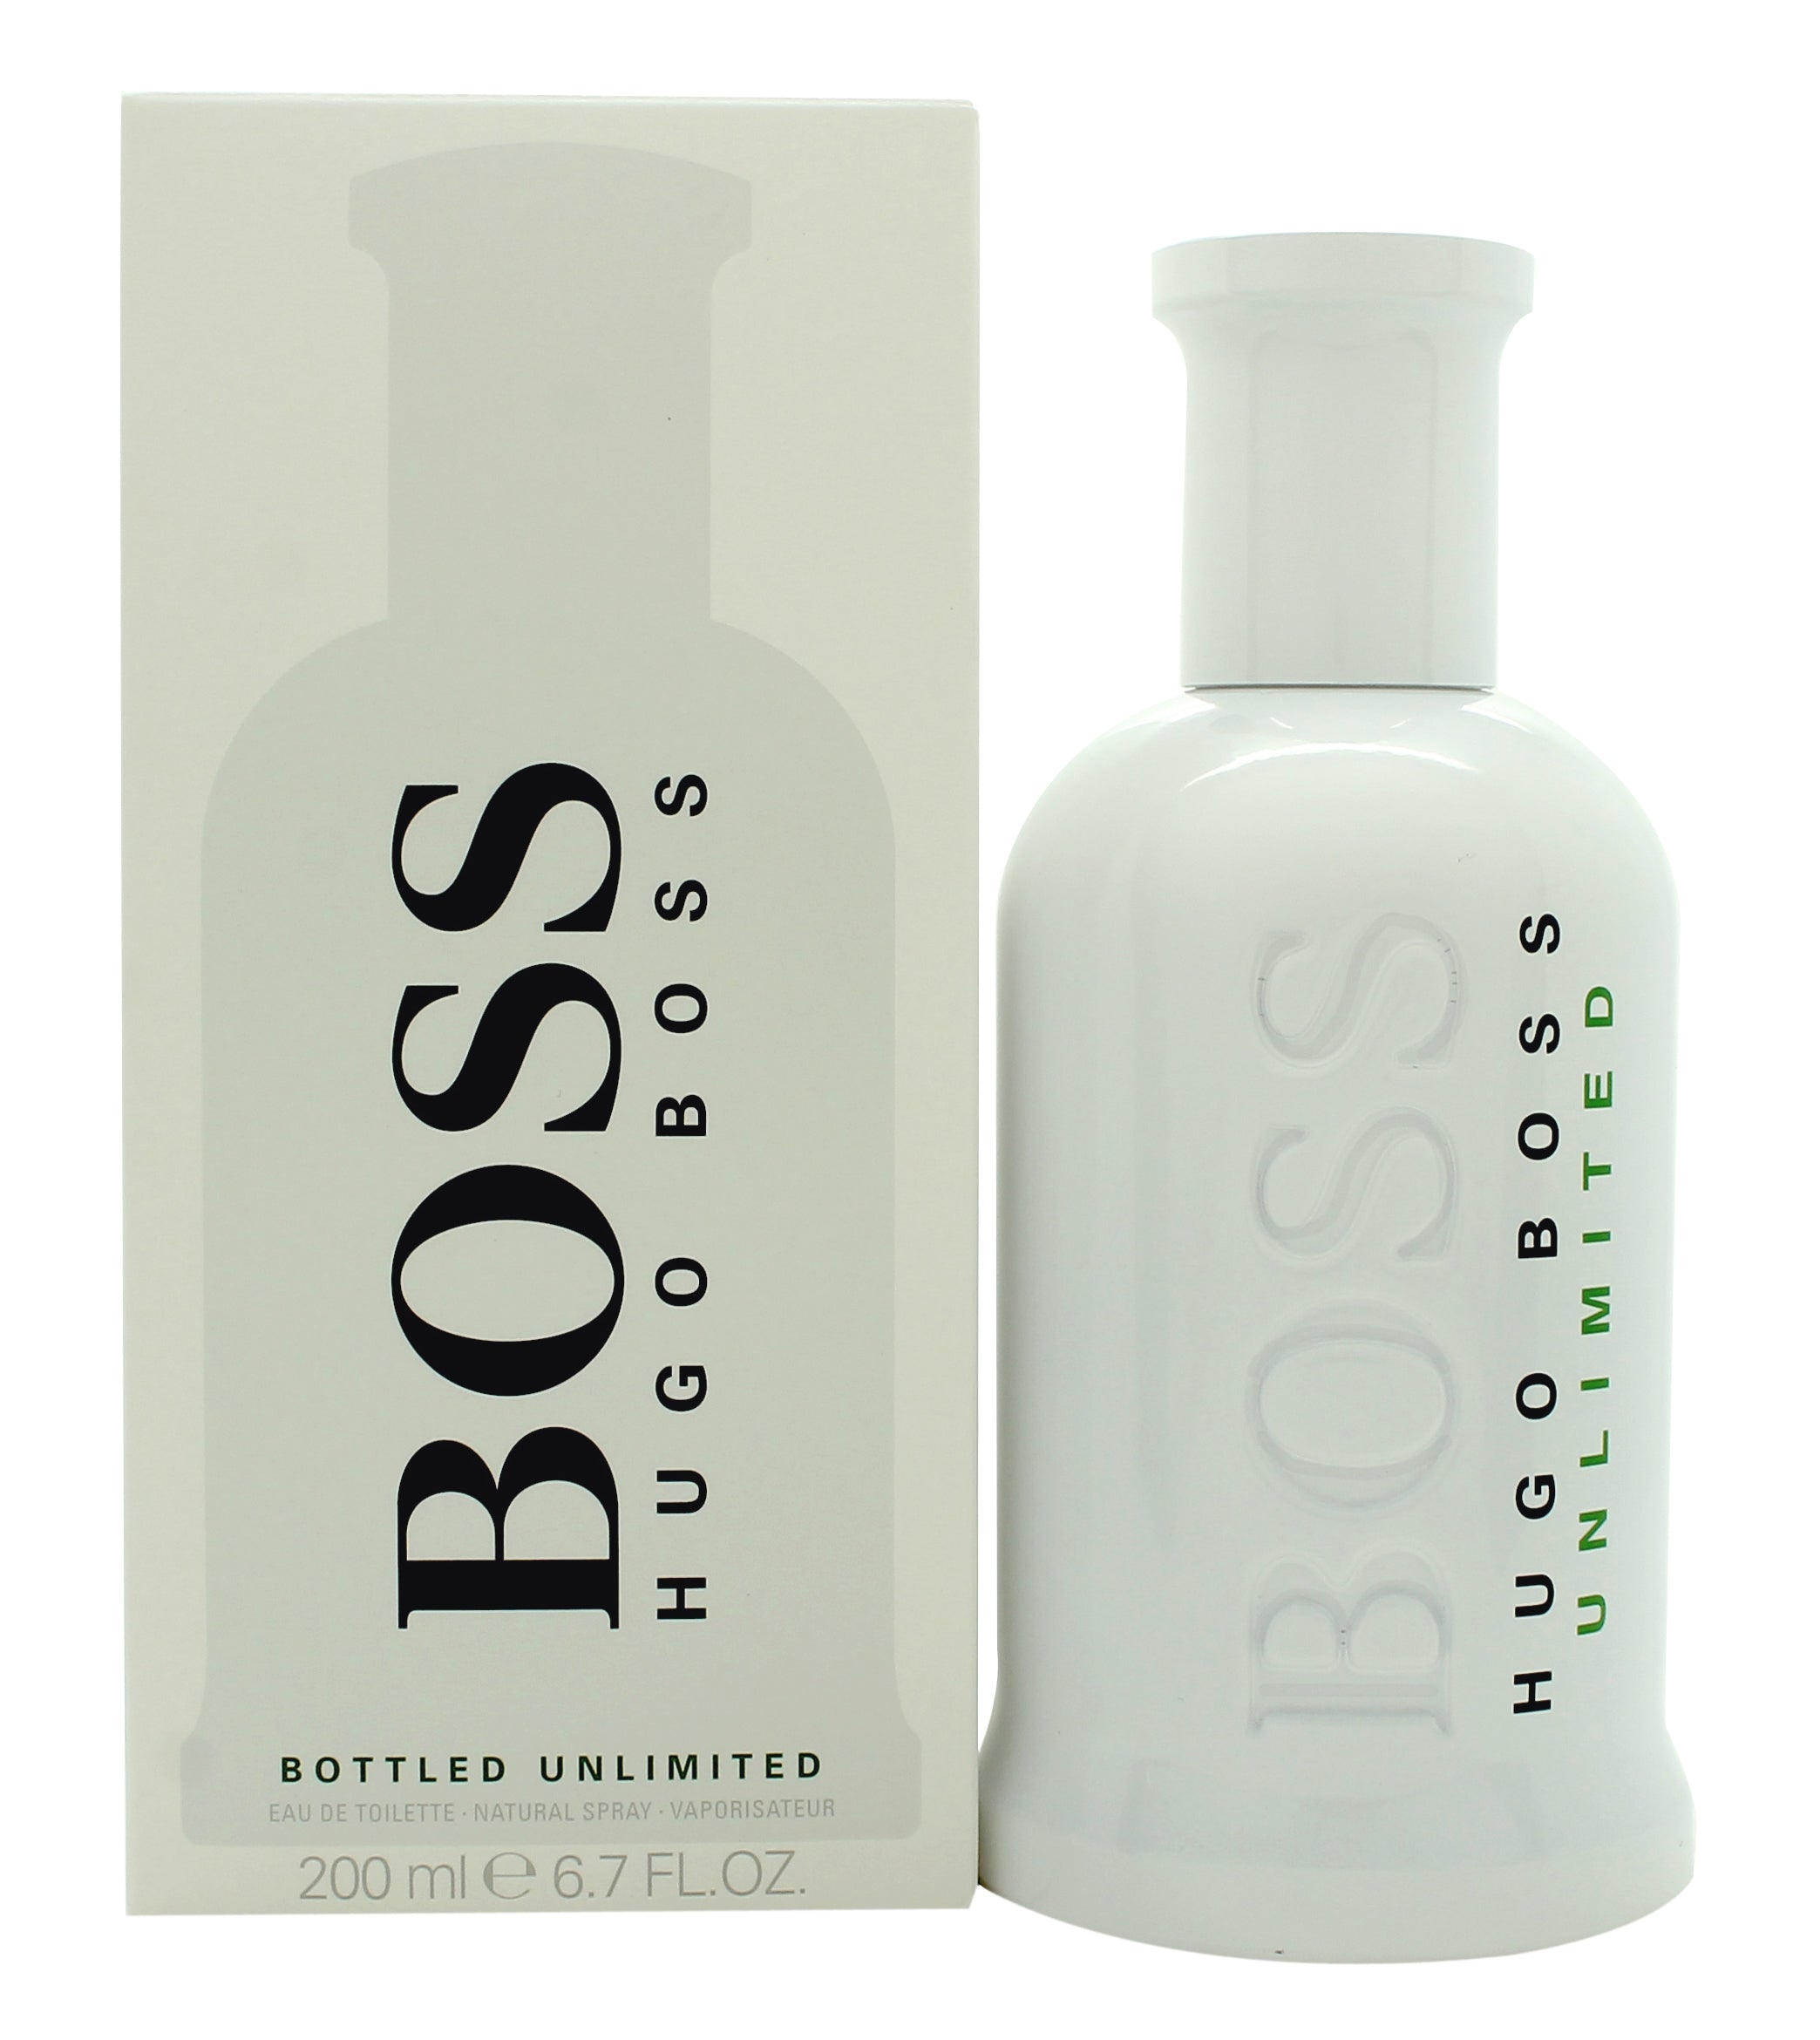 View Hugo Boss Boss Bottled Unlimited Eau de Toilette 200ml Spray information